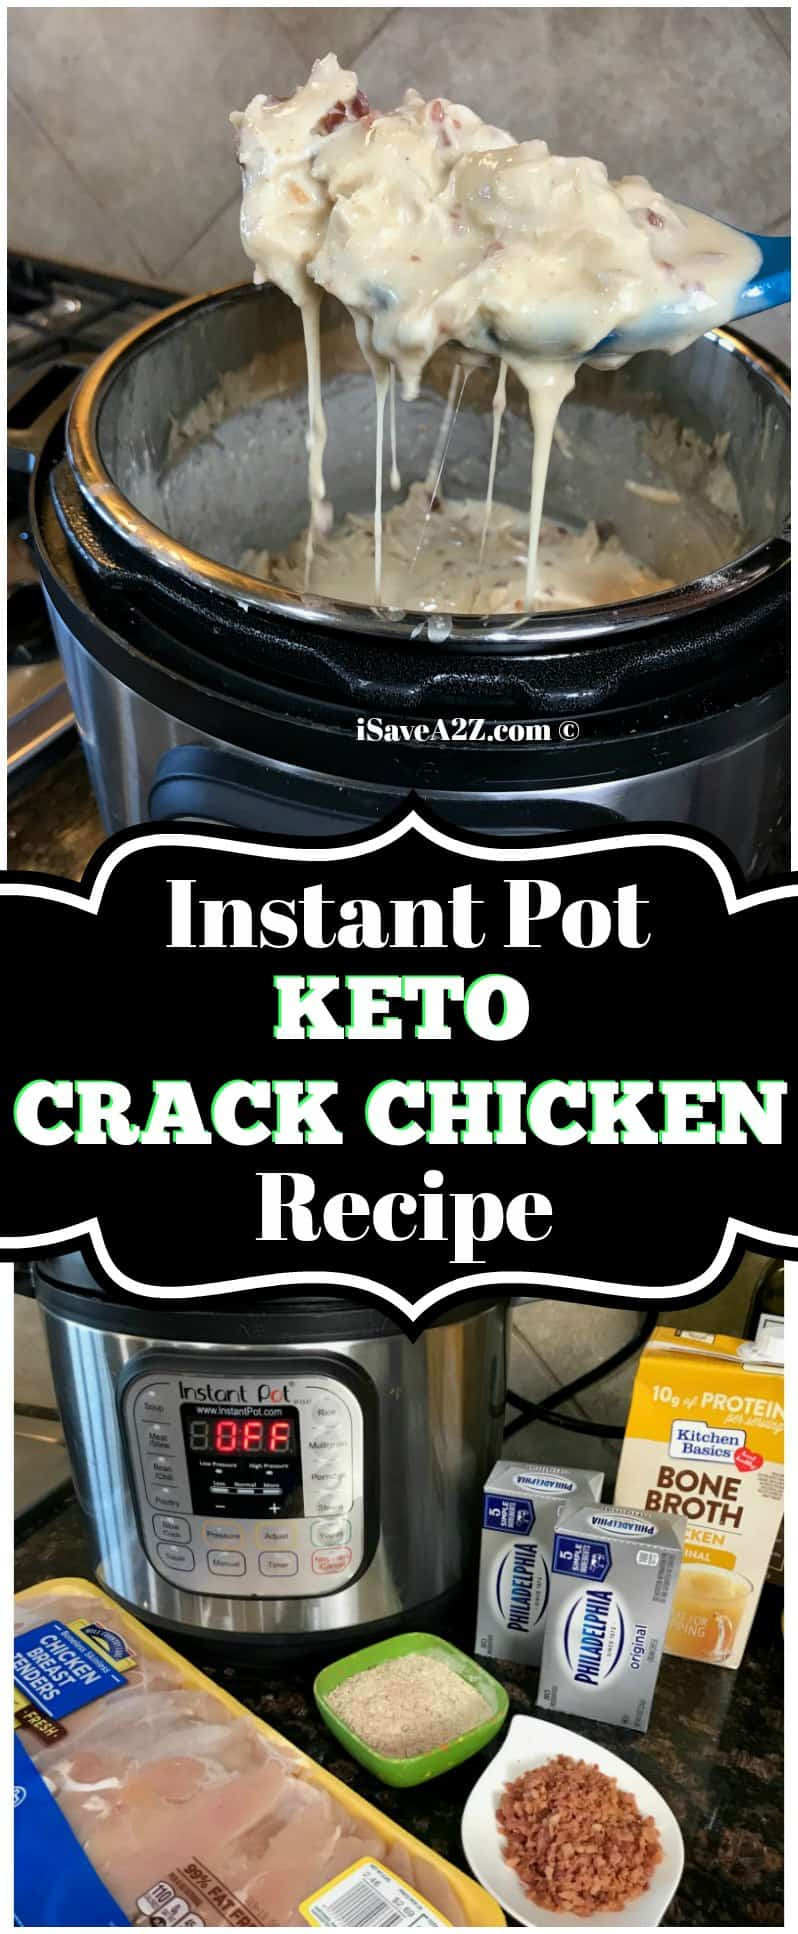 Instapot Crack Chicken Keto
 Instant Pot Keto Crack Chicken Recipe iSaveA2Z